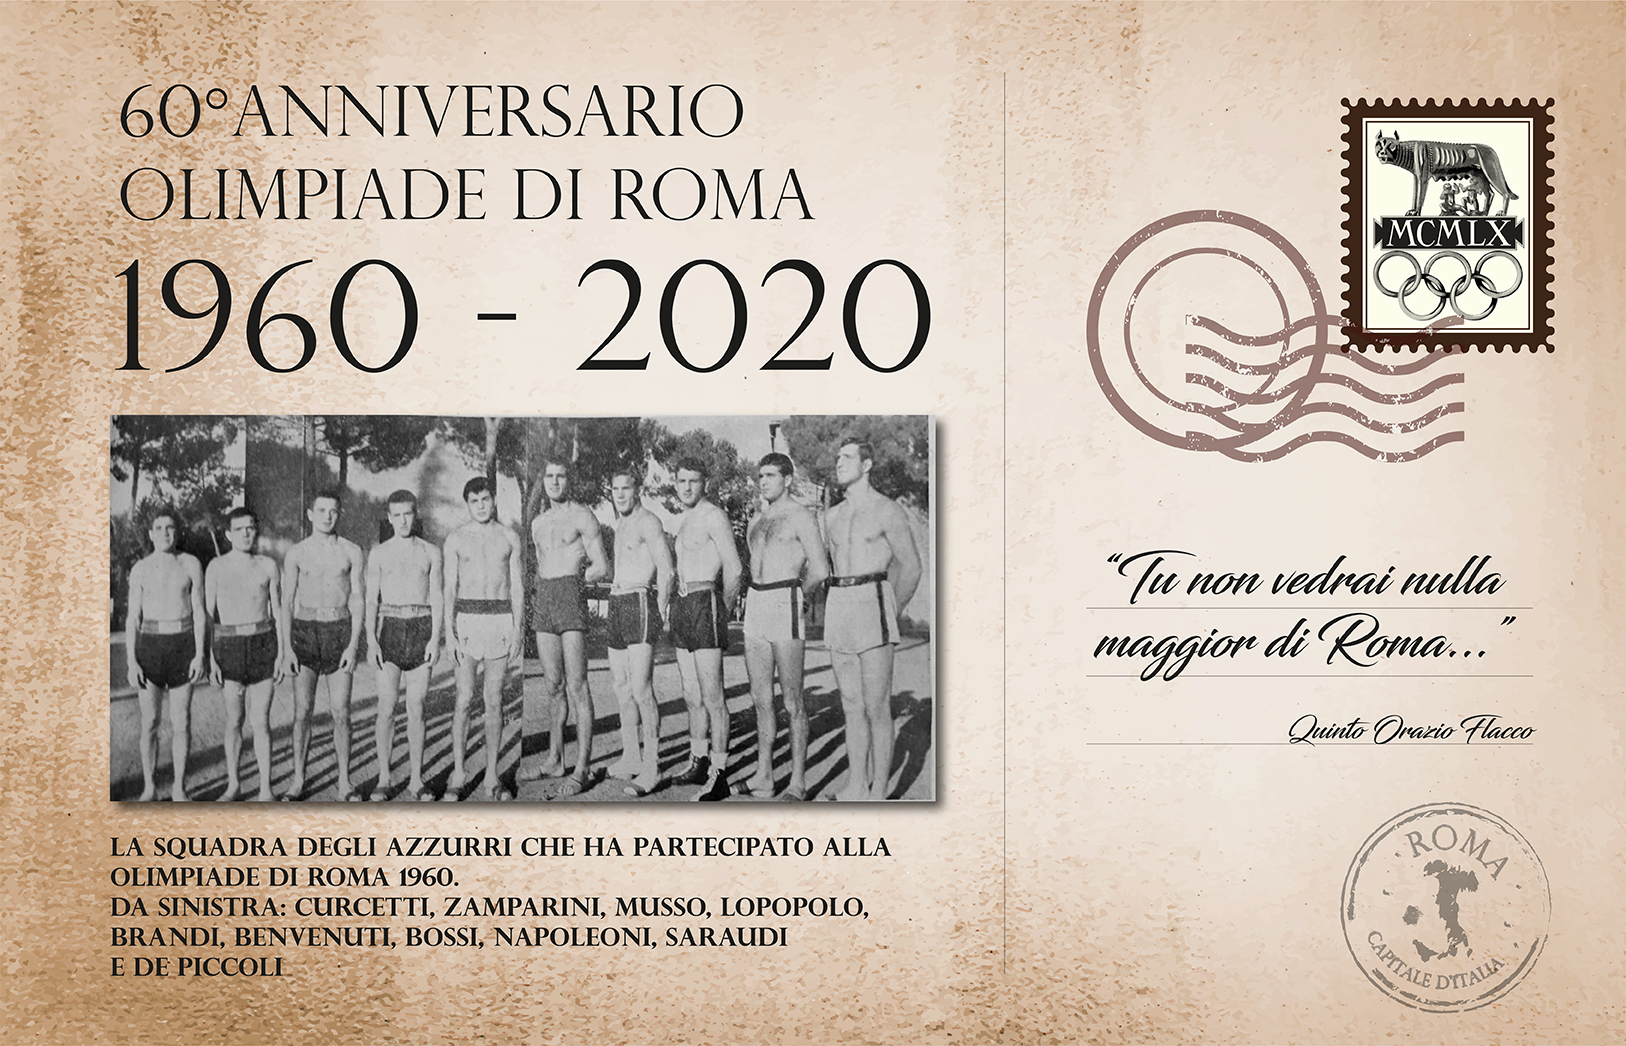 Accadde oggi: 5 settembre 1960 trionfo italiano alle Olimpiadi di Roma con 3 oro, 3 argento e 1 bronzo 